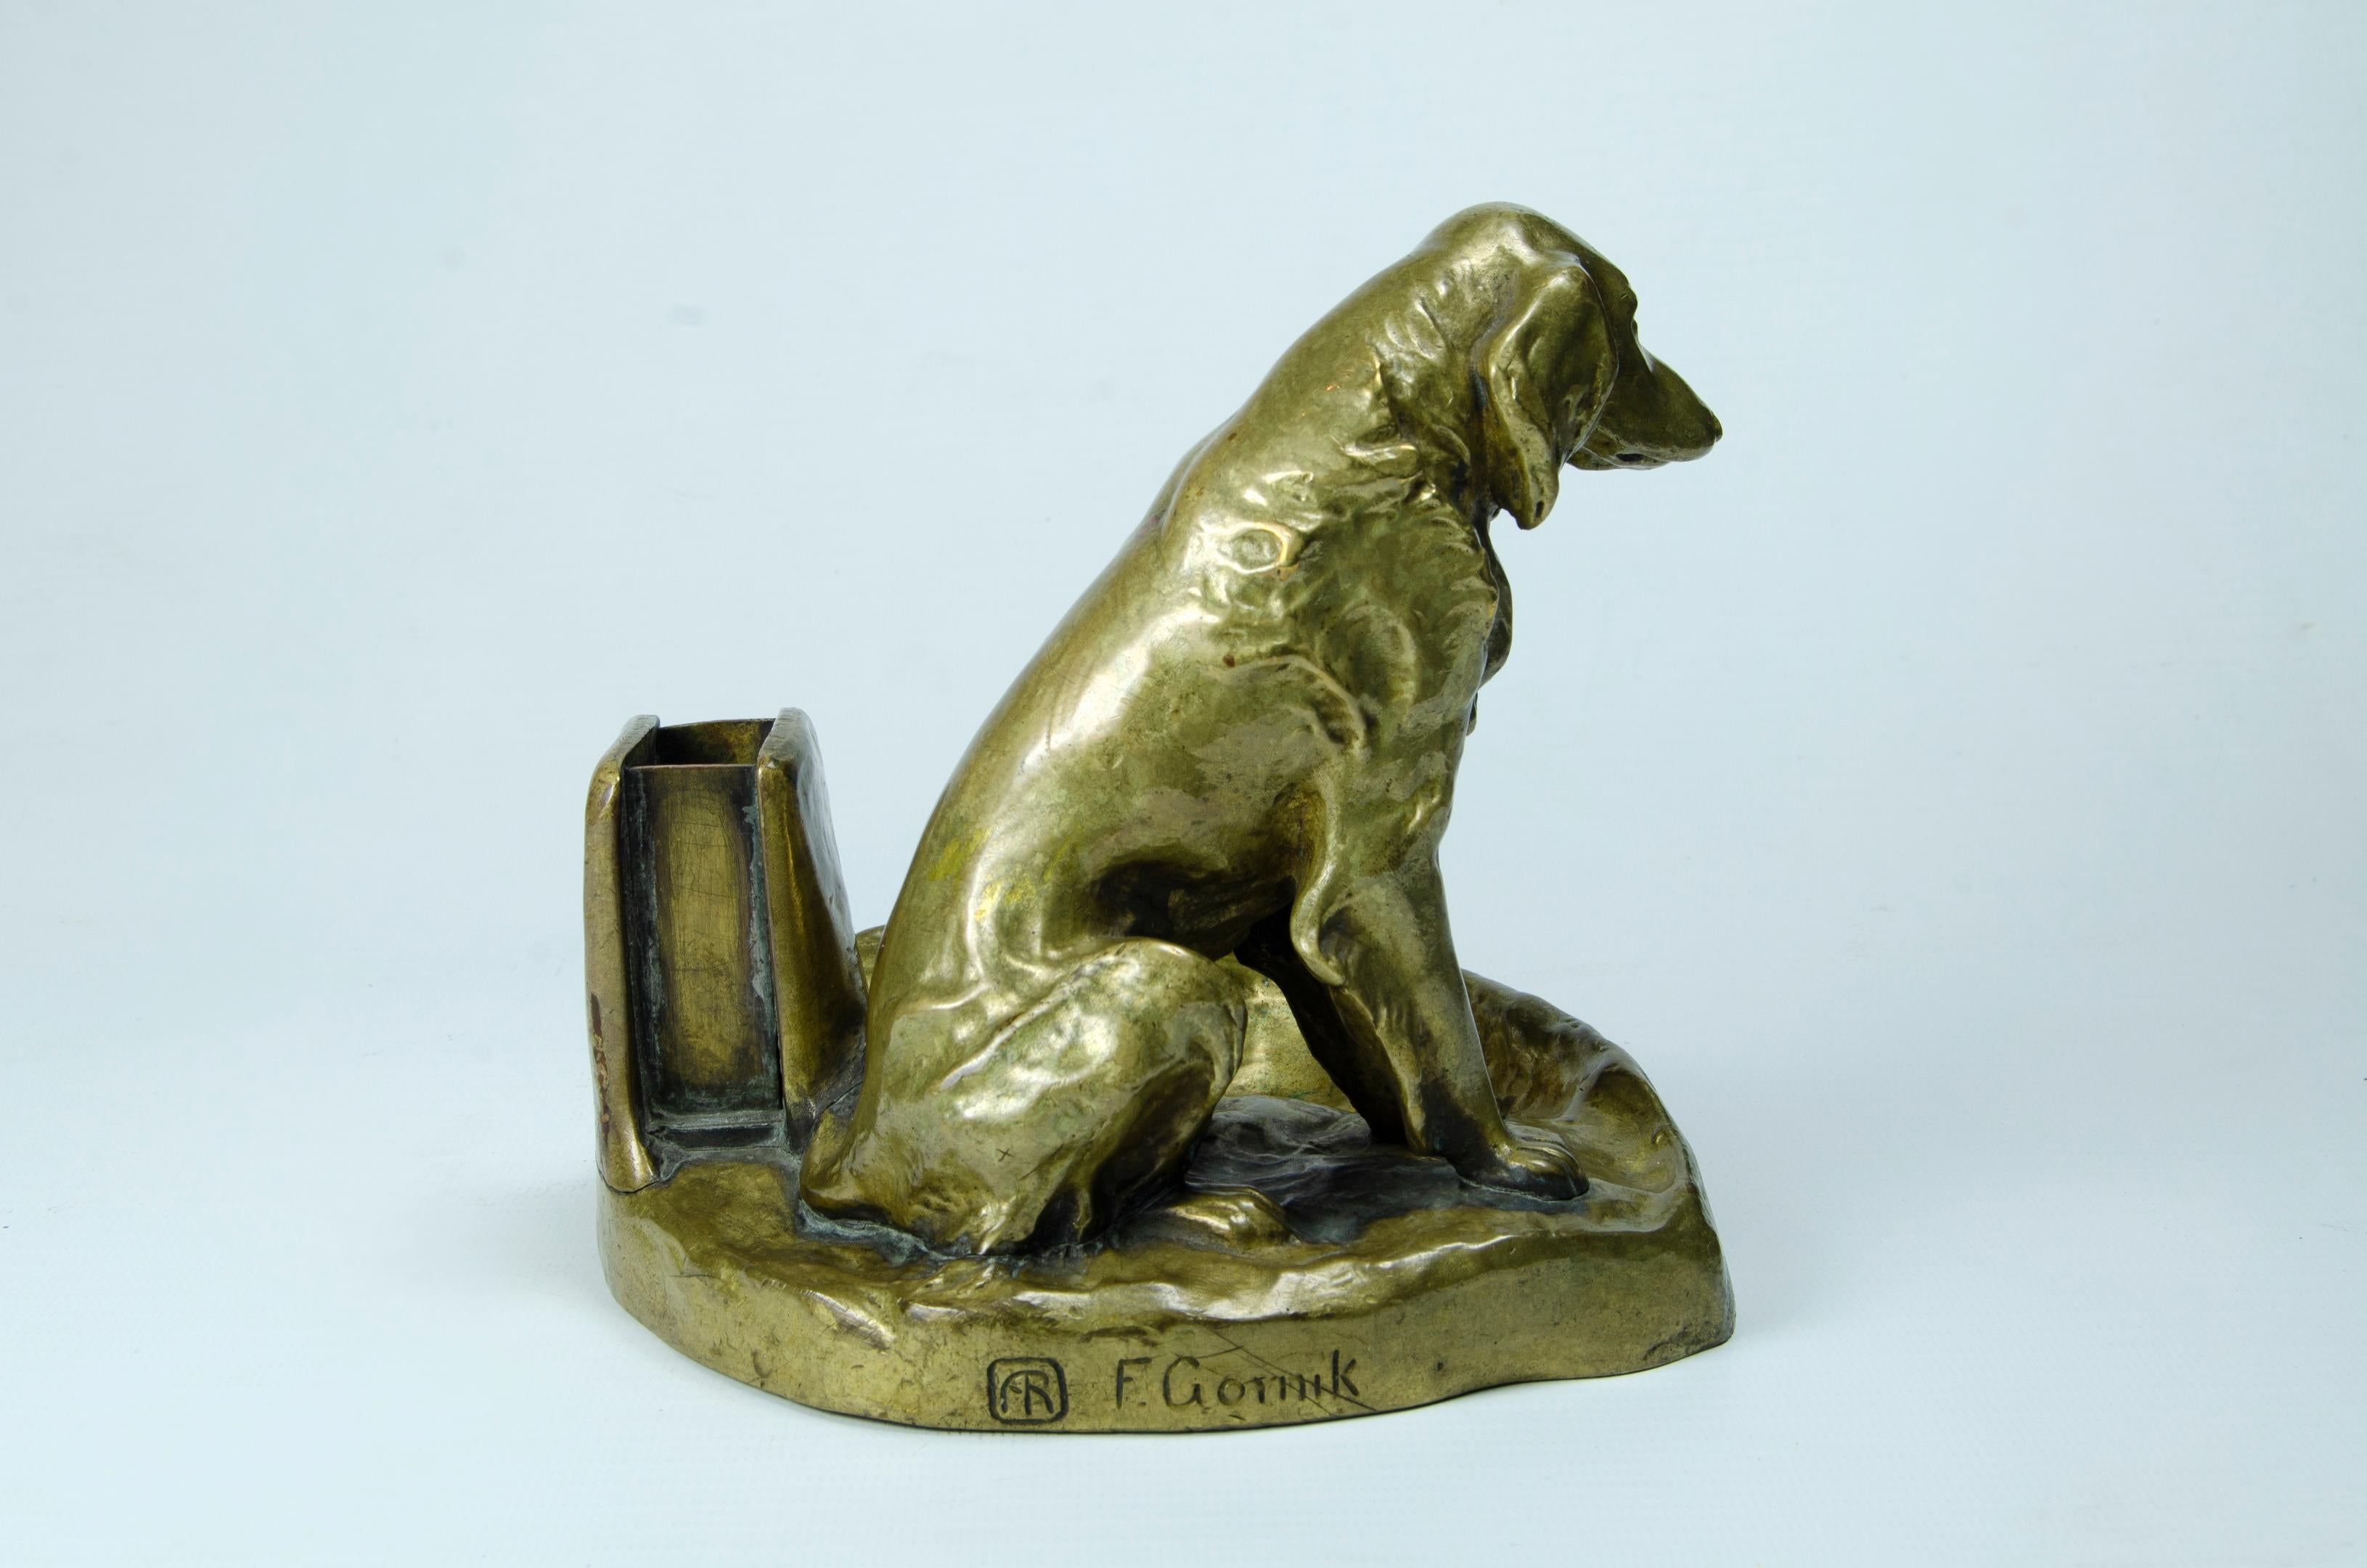 Österreichischer Bronzehund (Aschenbecher und Phosphor)
Künstler: F. Gornik an der Basis versiegelt
CIRCA 1900 perfekter Zustand.